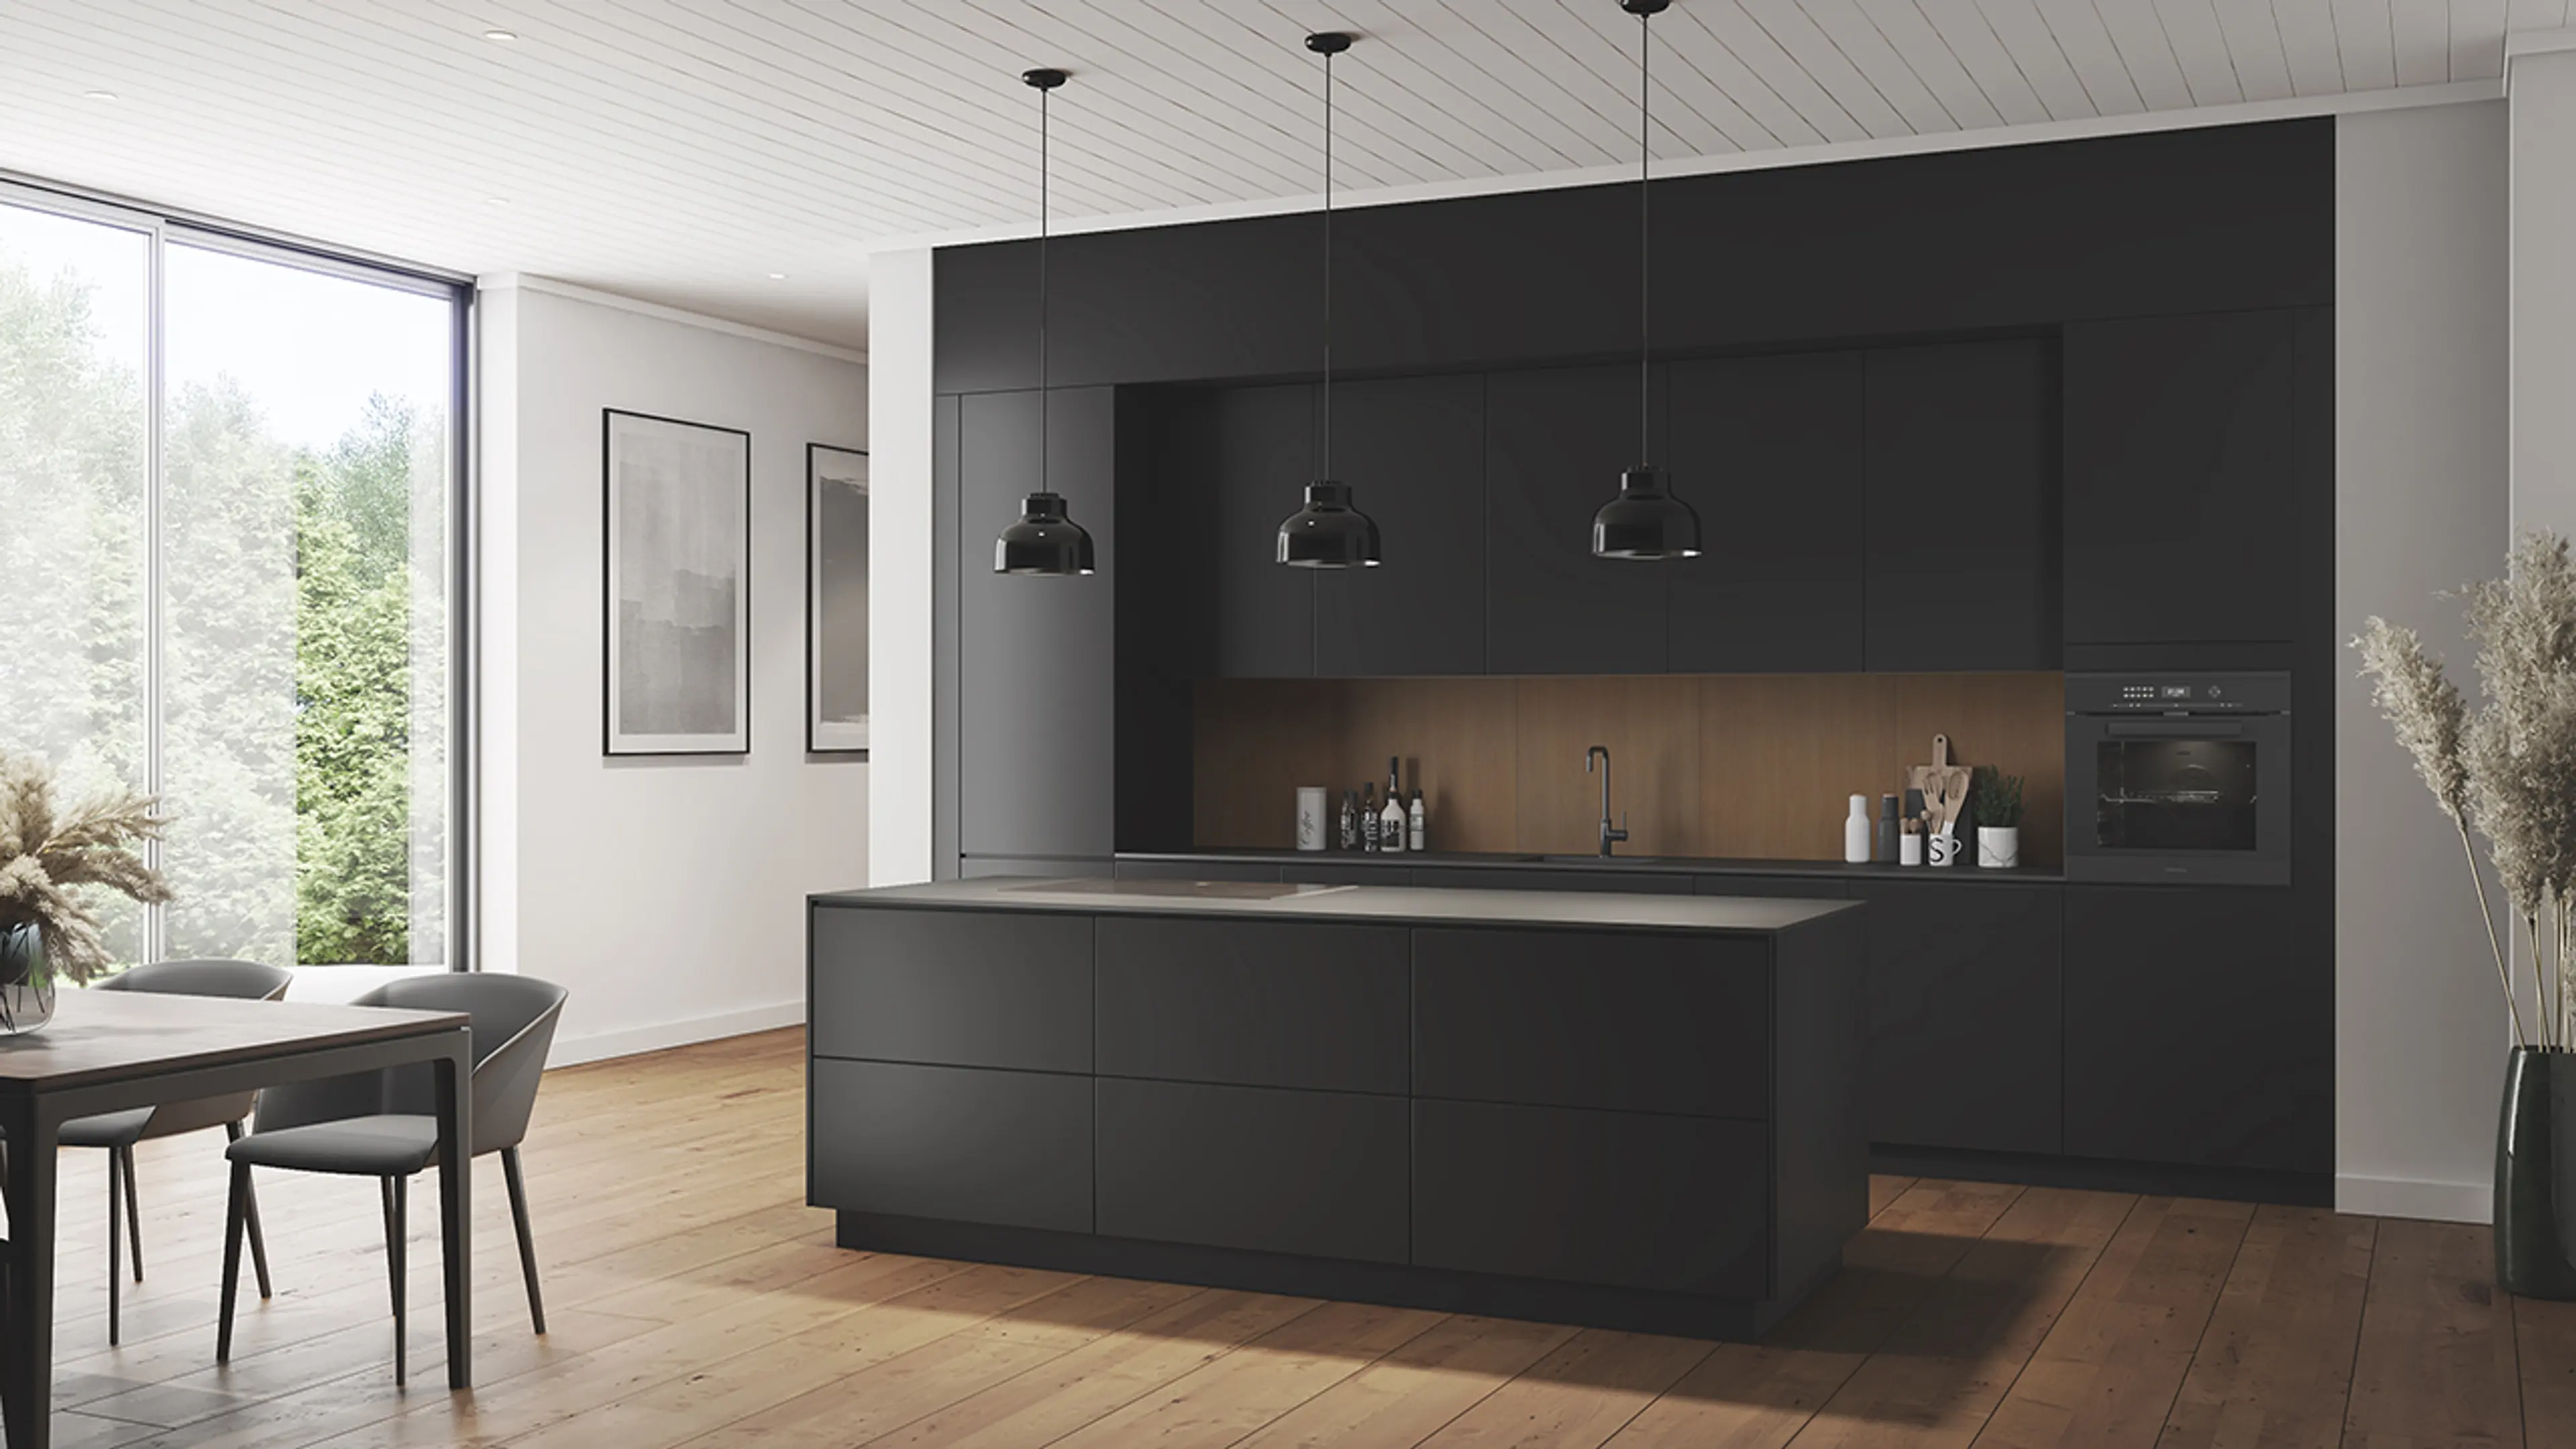 Nytt kjøkken med svart kjøkkeninnredning og kjøkkenplater i eik over kjøkkenbenken.